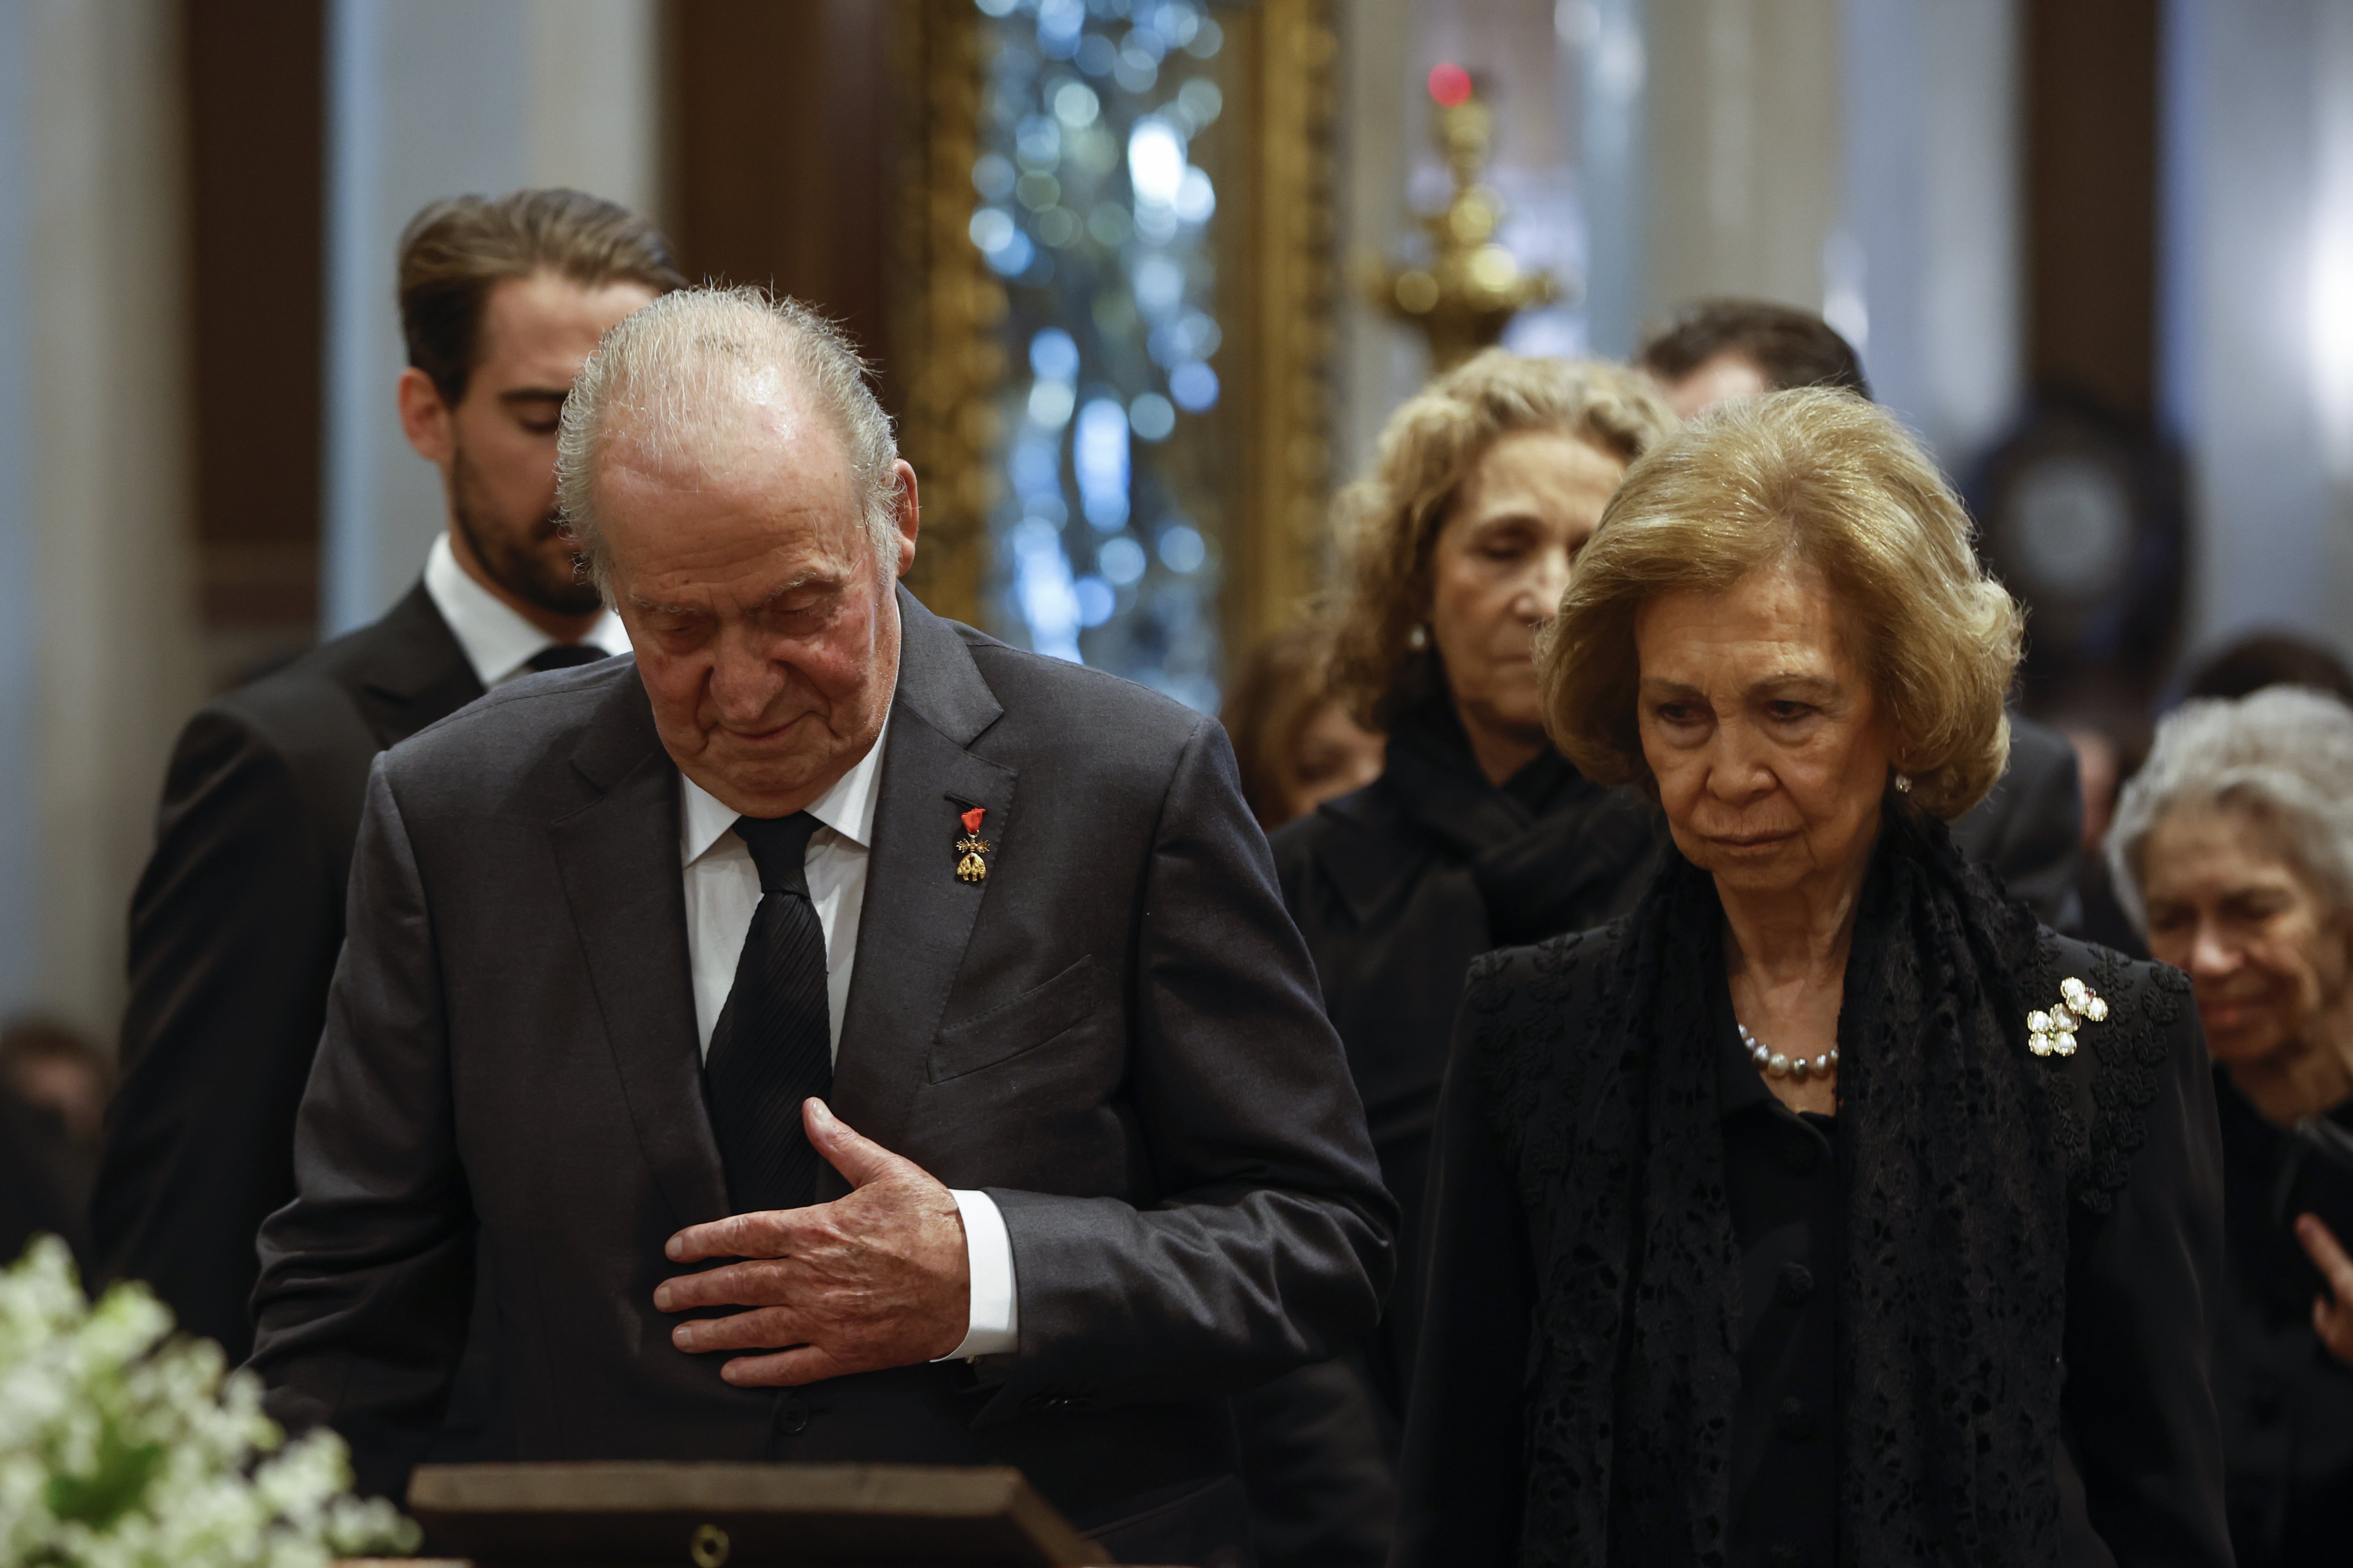 La reina Sofia i Joan Carles I, separats fins i tot en la mort, no volen que els enterrin junts